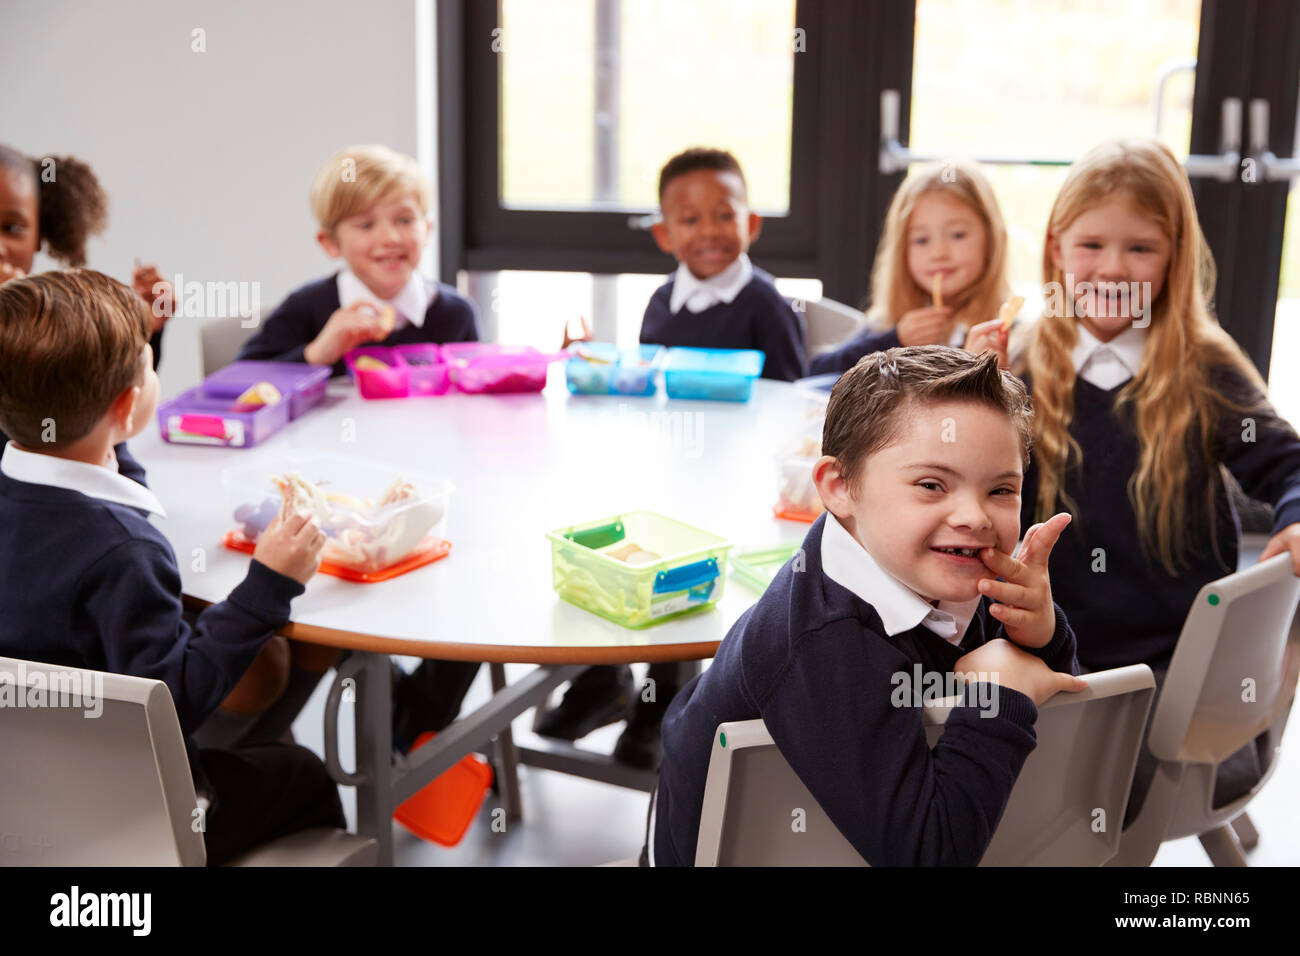 Portrait de l'école primaire les enfants assis ensemble à une table ronde à manger leurs paniers-repas, certains tournant pour faire face à l'appareil photo Banque D'Images